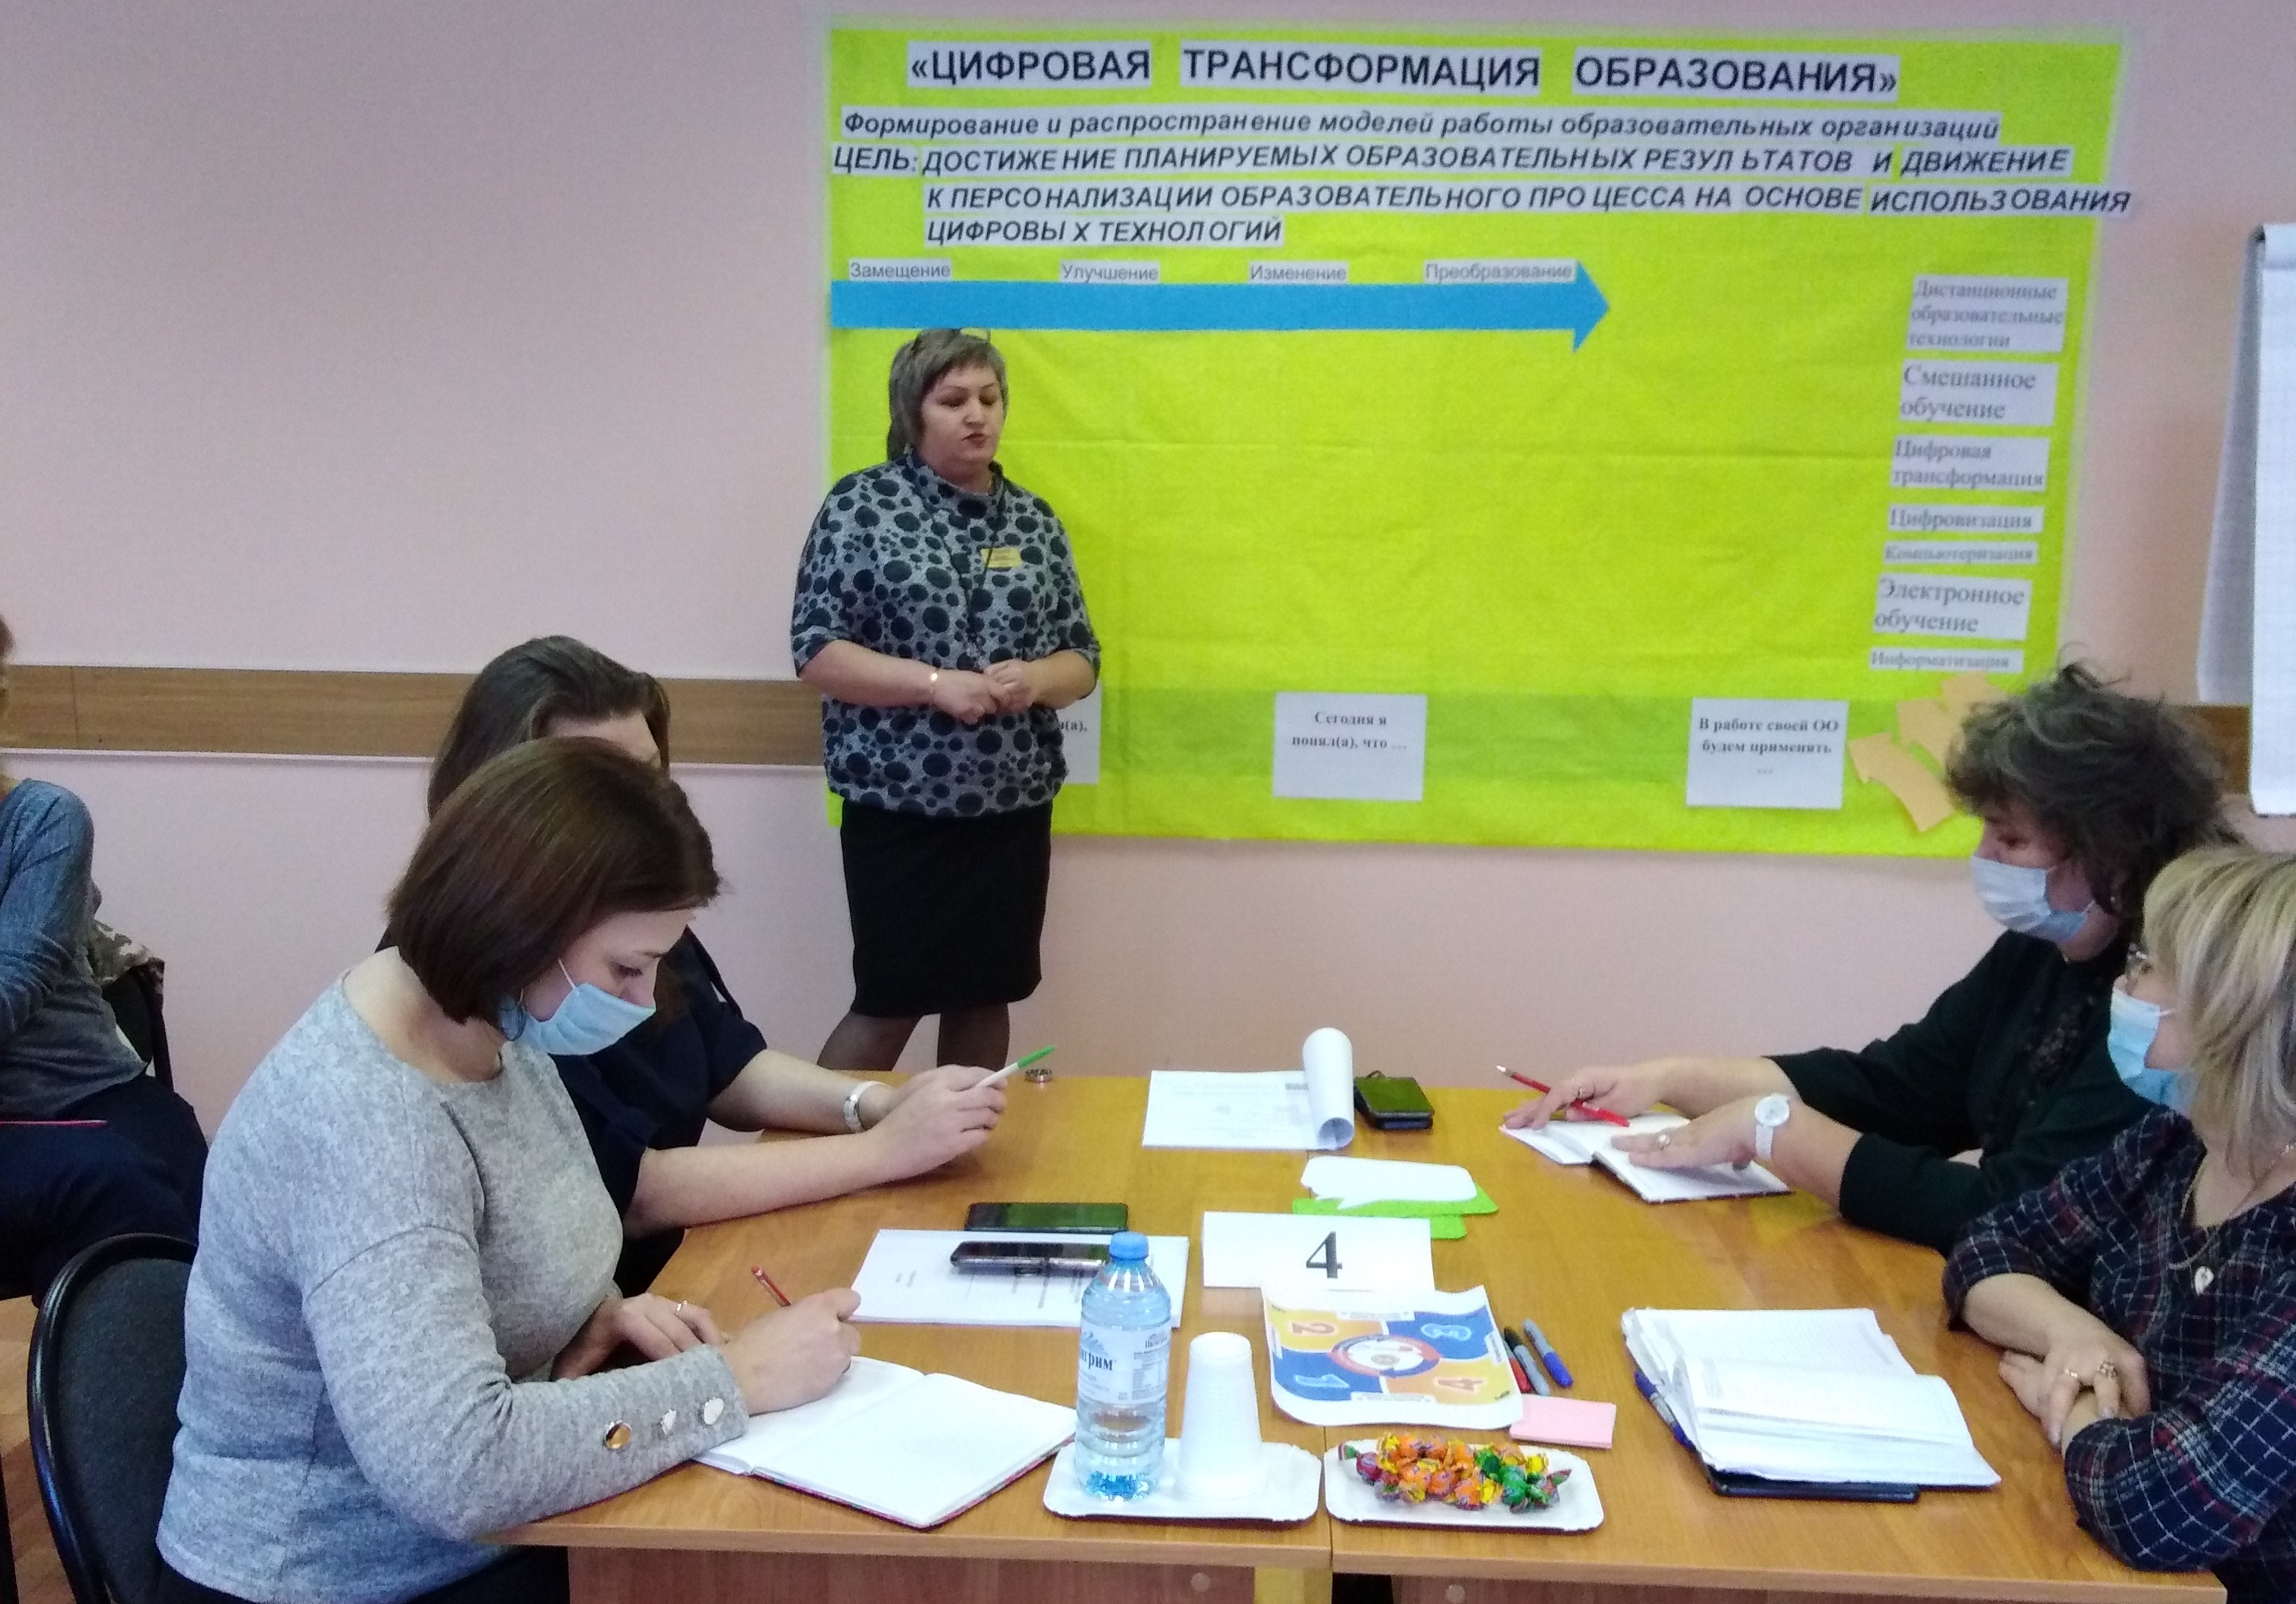 Декадник методической работы «Цифровая трансформация образования» проходит для беловских педагогов 